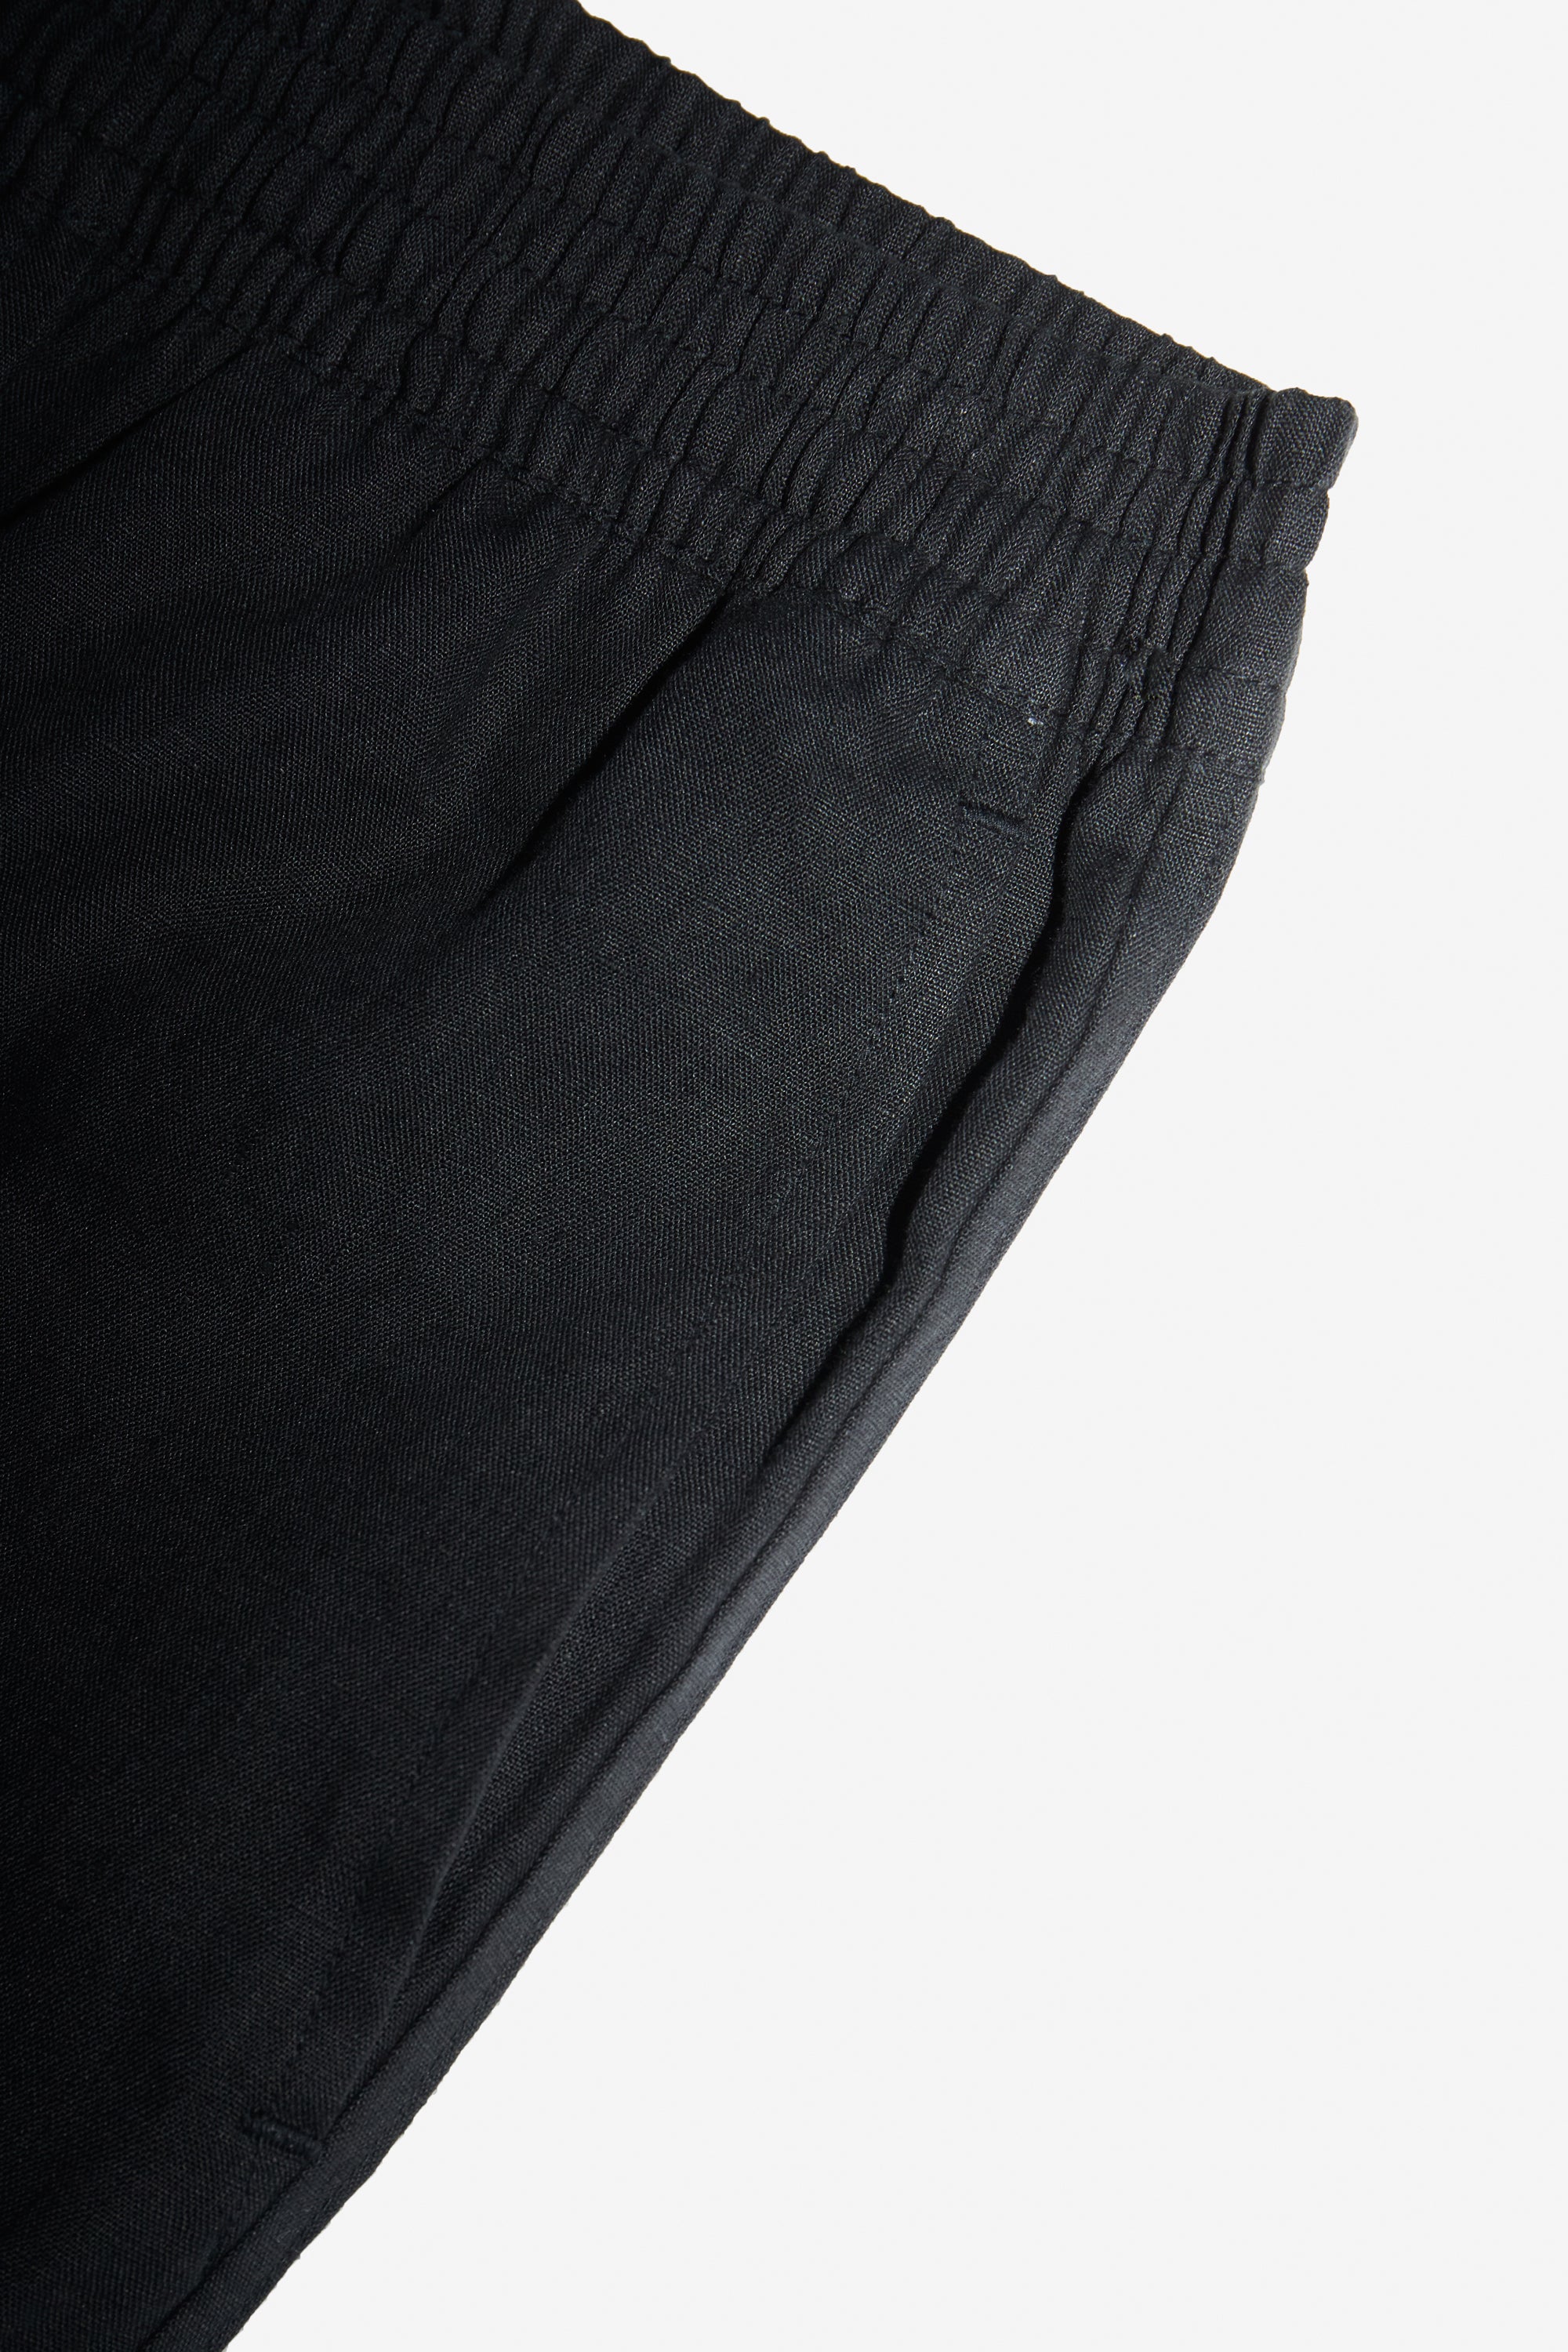 TerraFibre BLACK LINEN CLASSIC PANTS